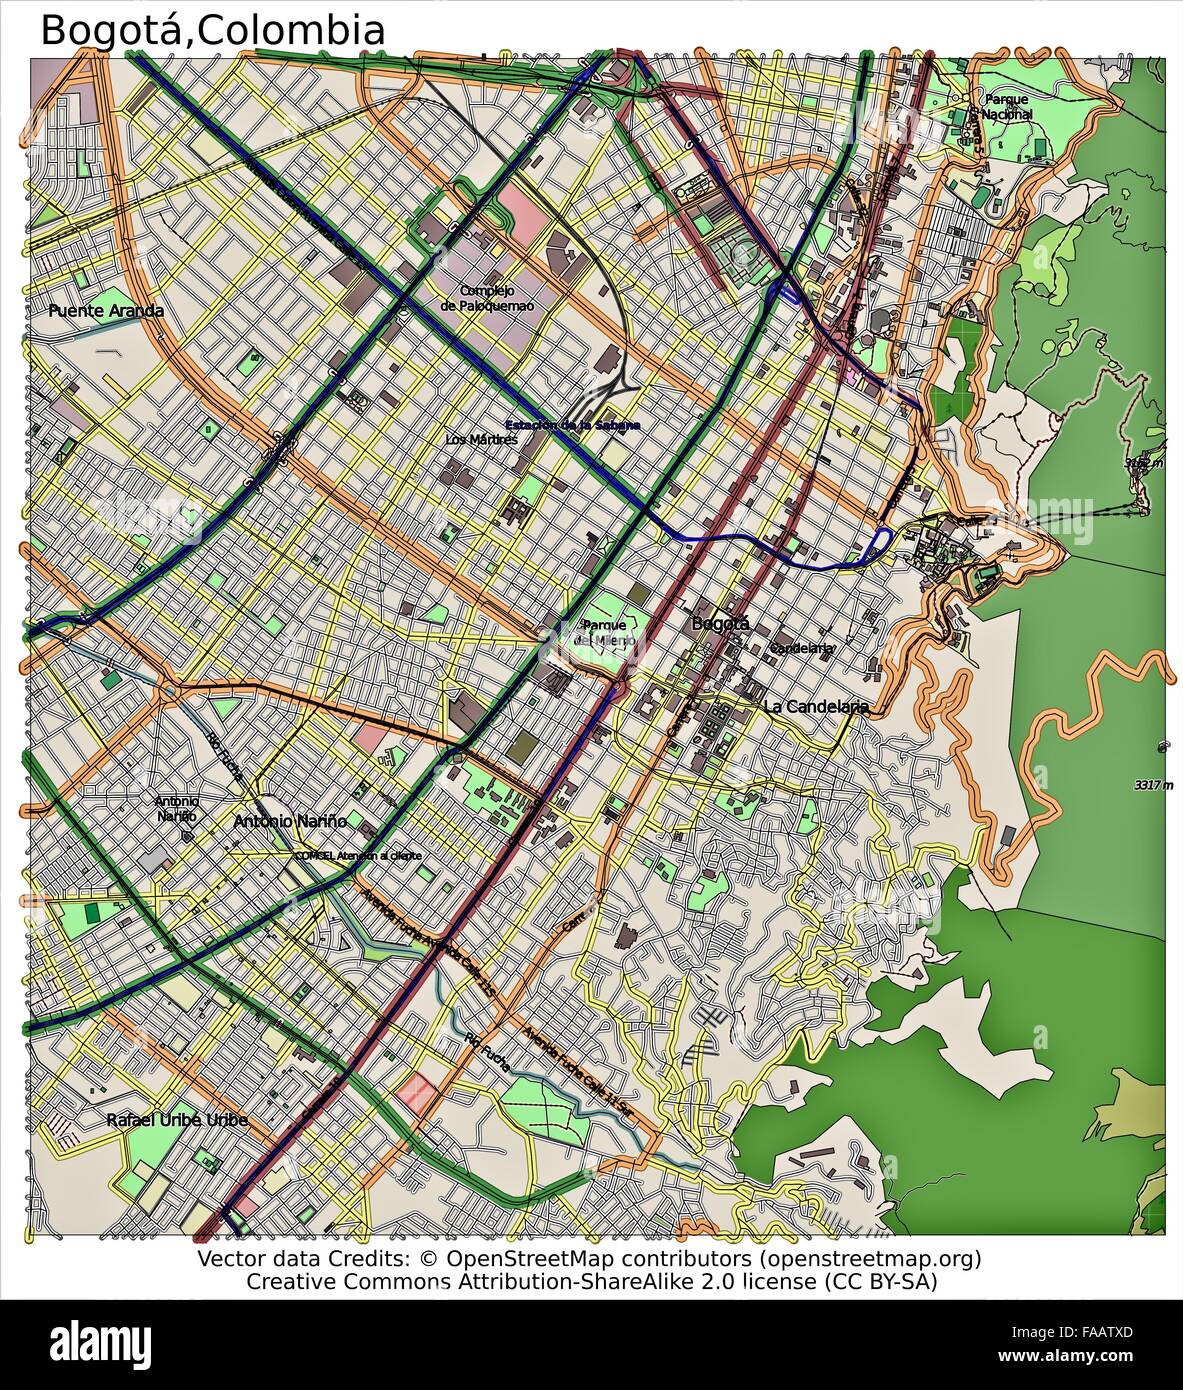 map of bogota colombia neighborhoods Bogota Colombia City Map Stock Photo Alamy map of bogota colombia neighborhoods